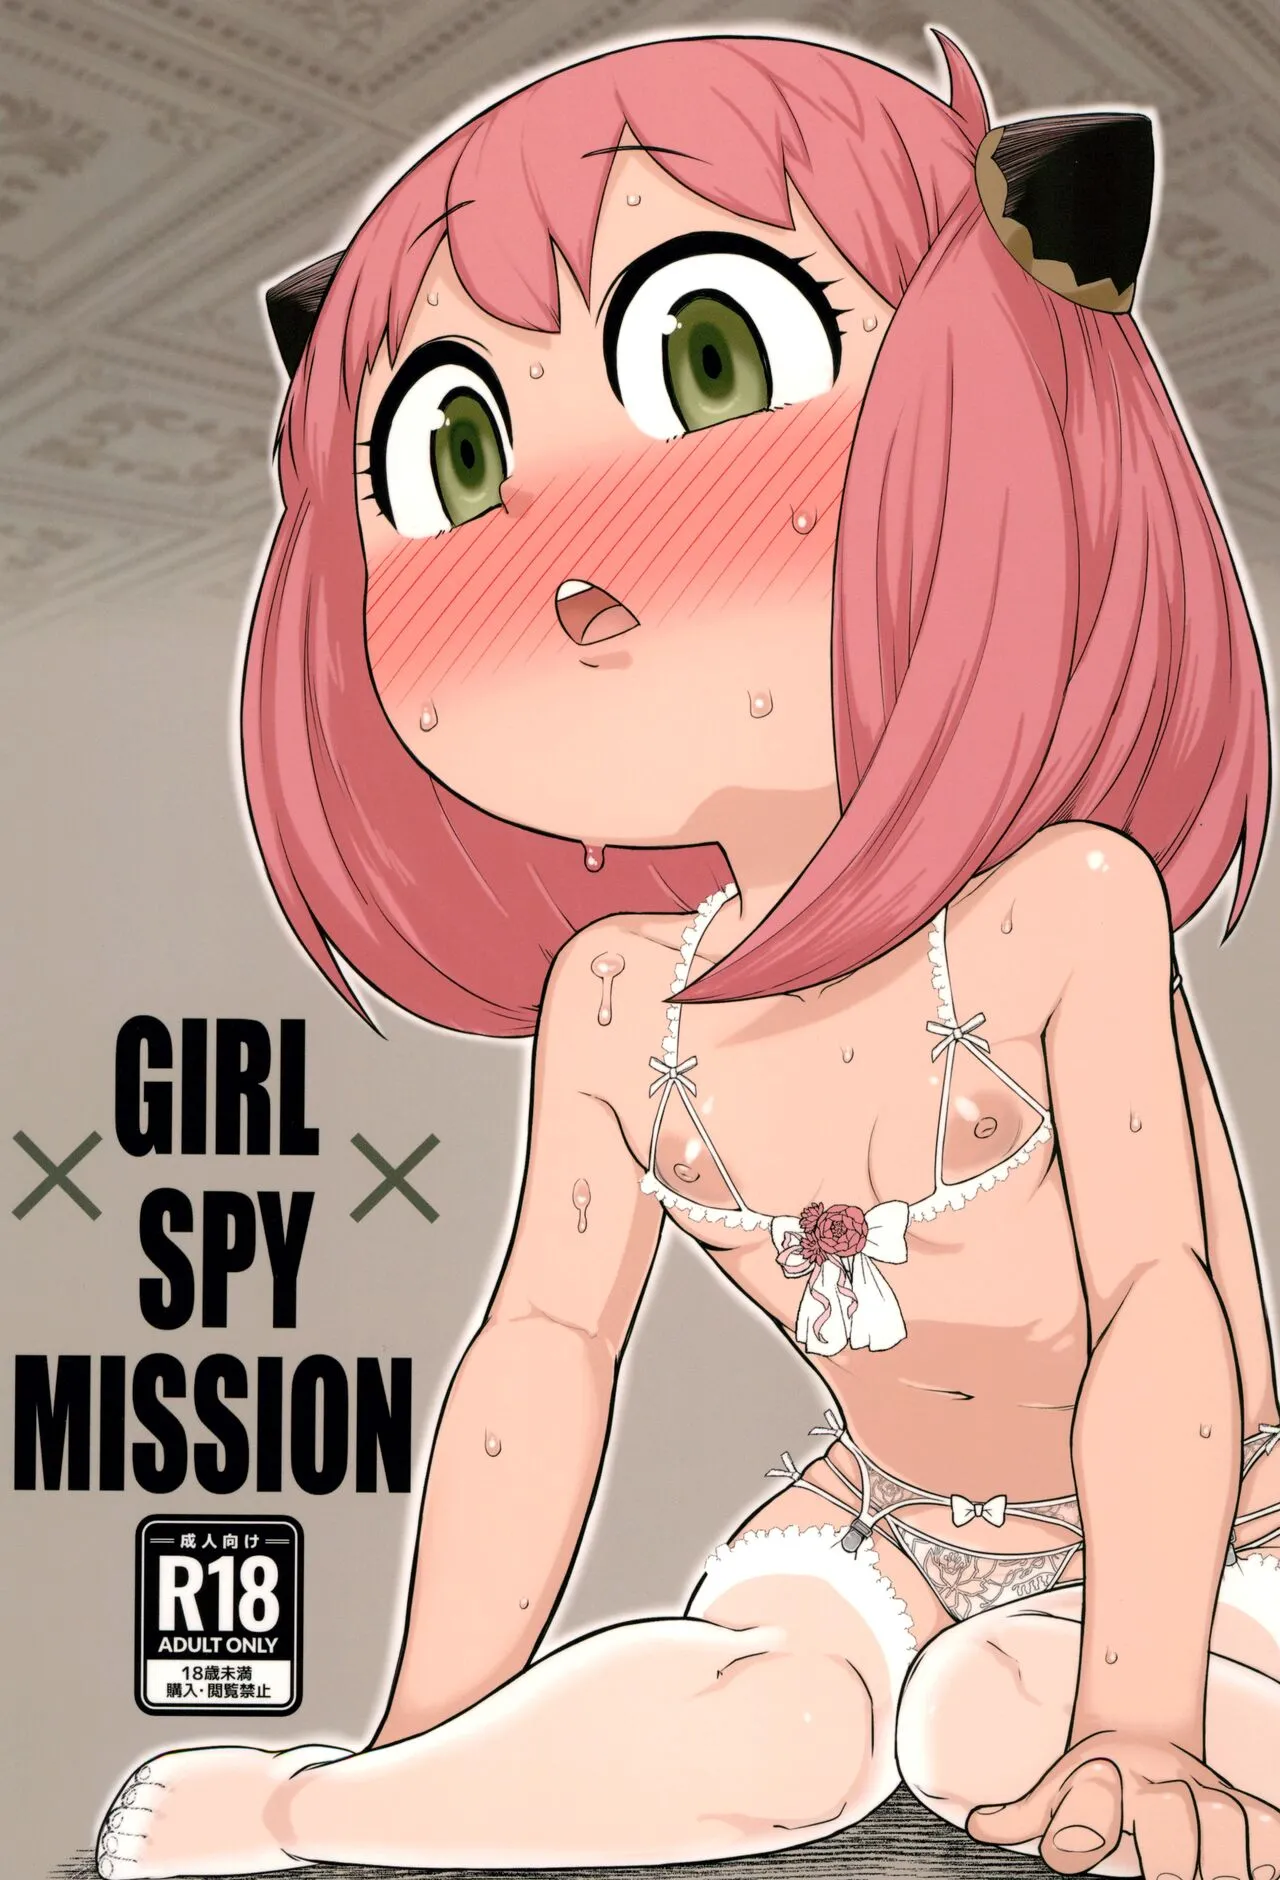 GIRL SPY MISSION